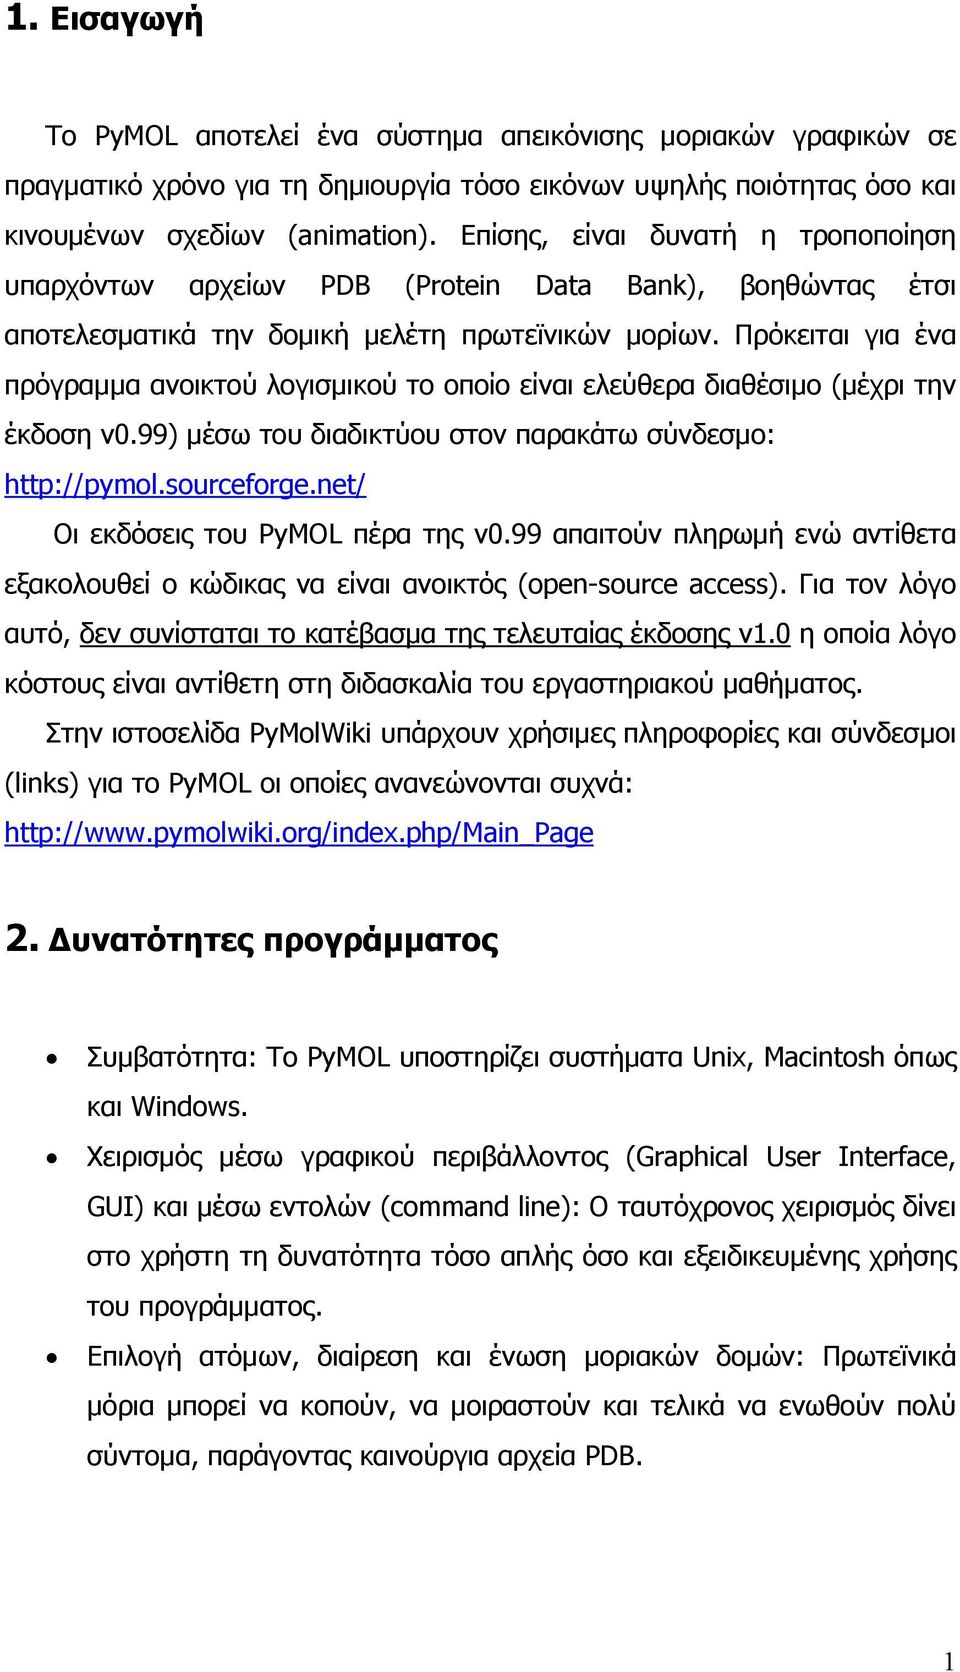 Πρόκειται για ένα πρόγραμμα ανοικτού λογισμικού το οποίο είναι ελεύθερα διαθέσιμο (μέχρι την έκδοση v0.99) μέσω του διαδικτύου στον παρακάτω σύνδεσμο: http://pymol.sourceforge.